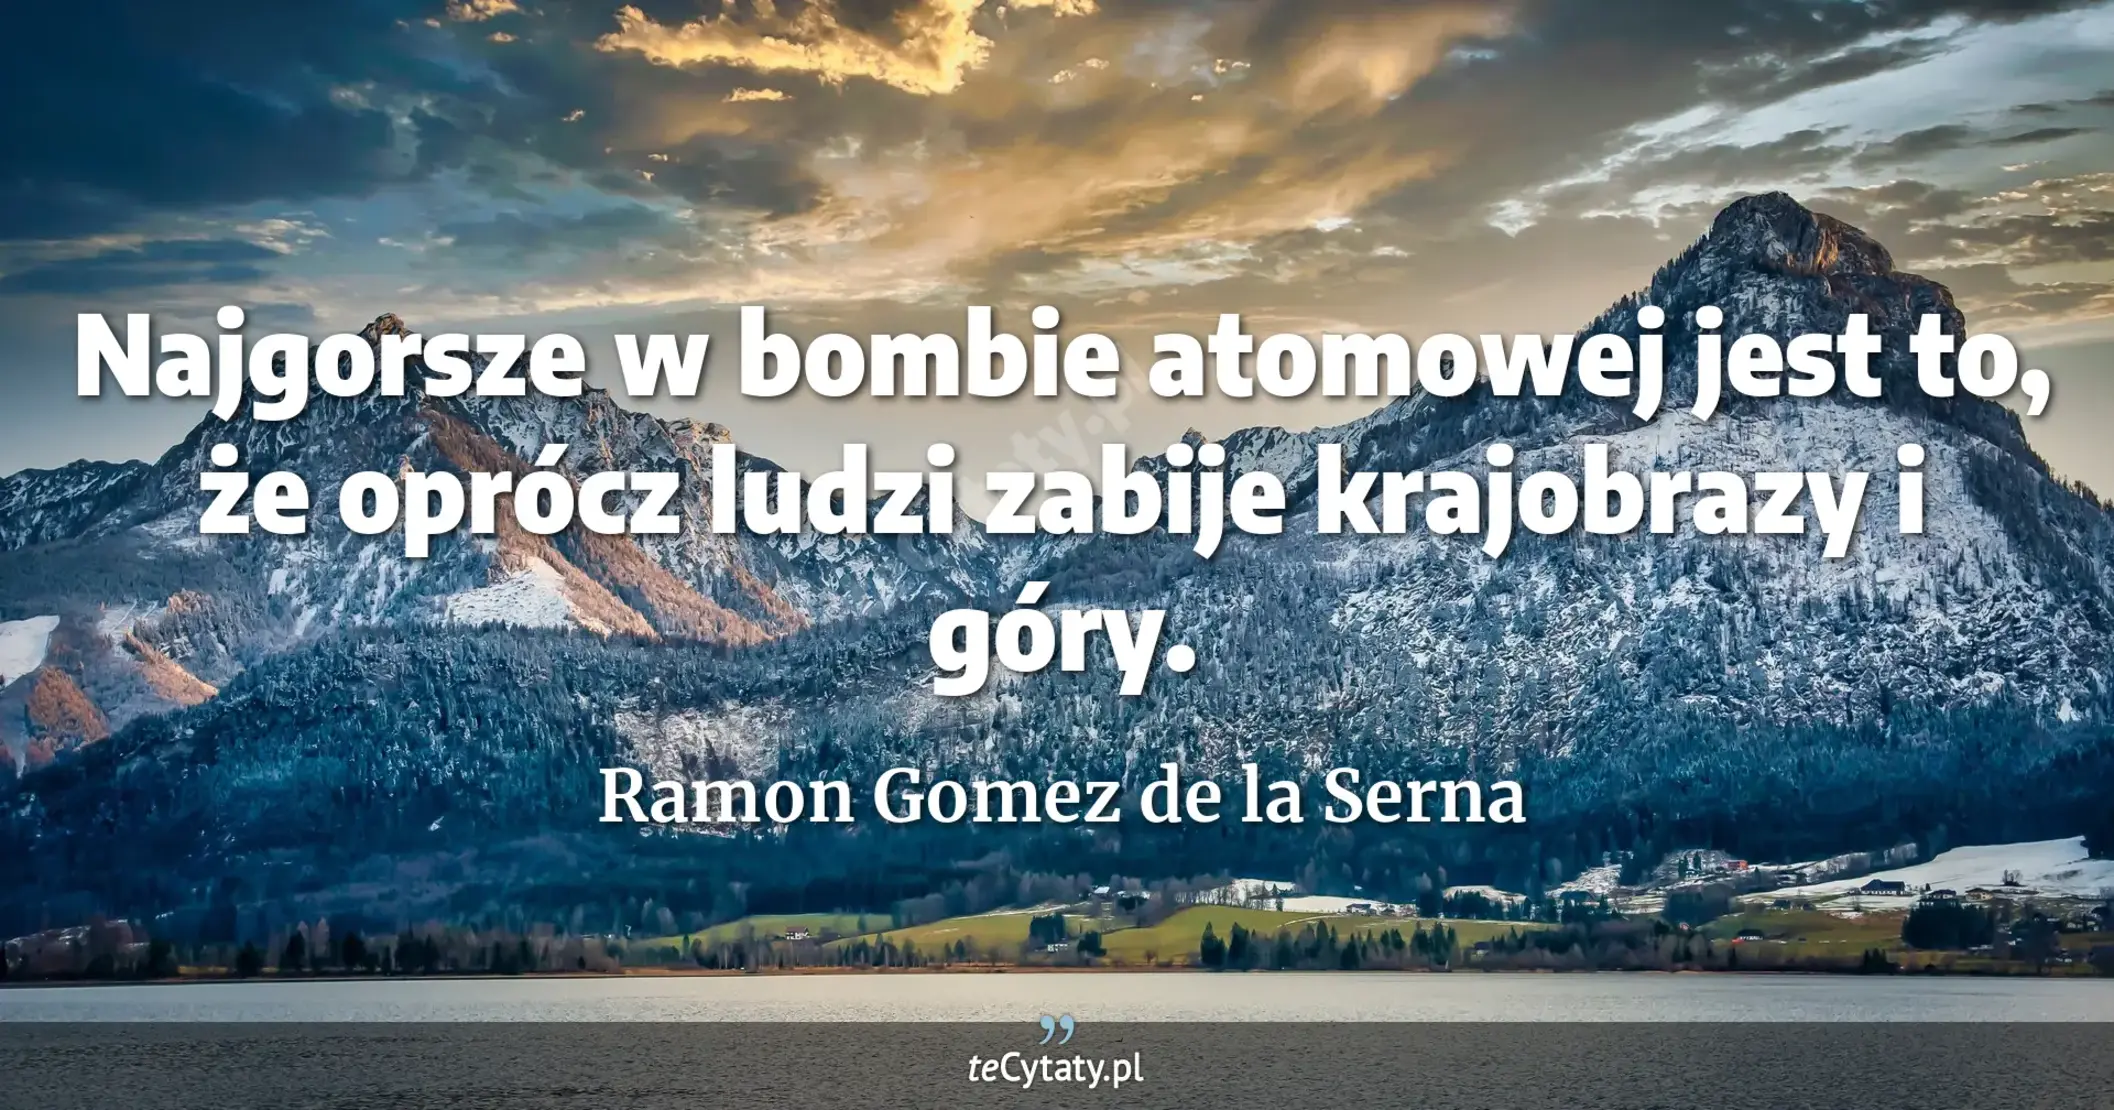 Najgorsze w bombie atomowej jest to, że oprócz ludzi zabije krajobrazy i góry. - Ramon Gomez de la Serna